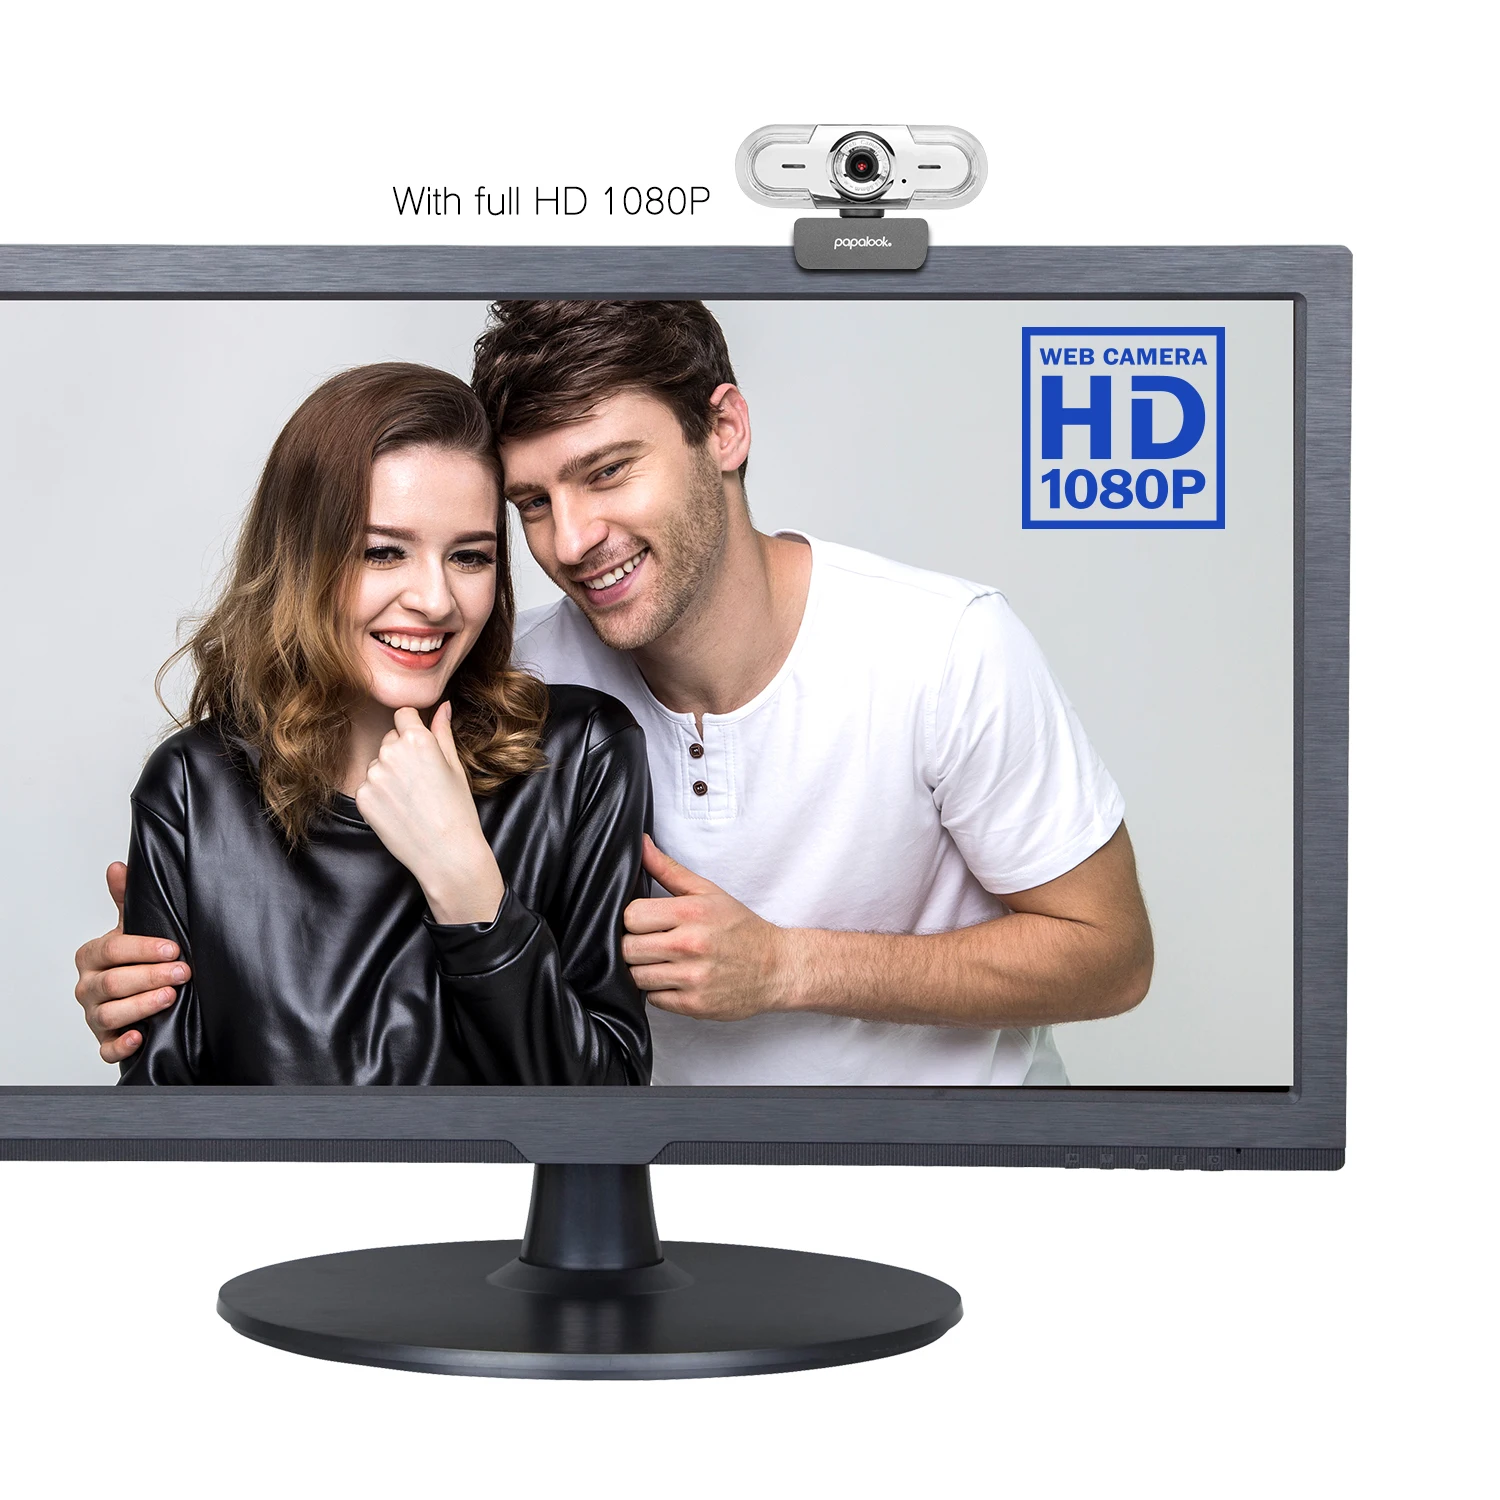 FHD 1080P Webcam, PAPALOOK PA452 Pro 30FPS Ročno Ostrenje USB Web Kamero z Dvojno DSP Mikrofoni, za PC in Mac Prenosni računalnik Desktop